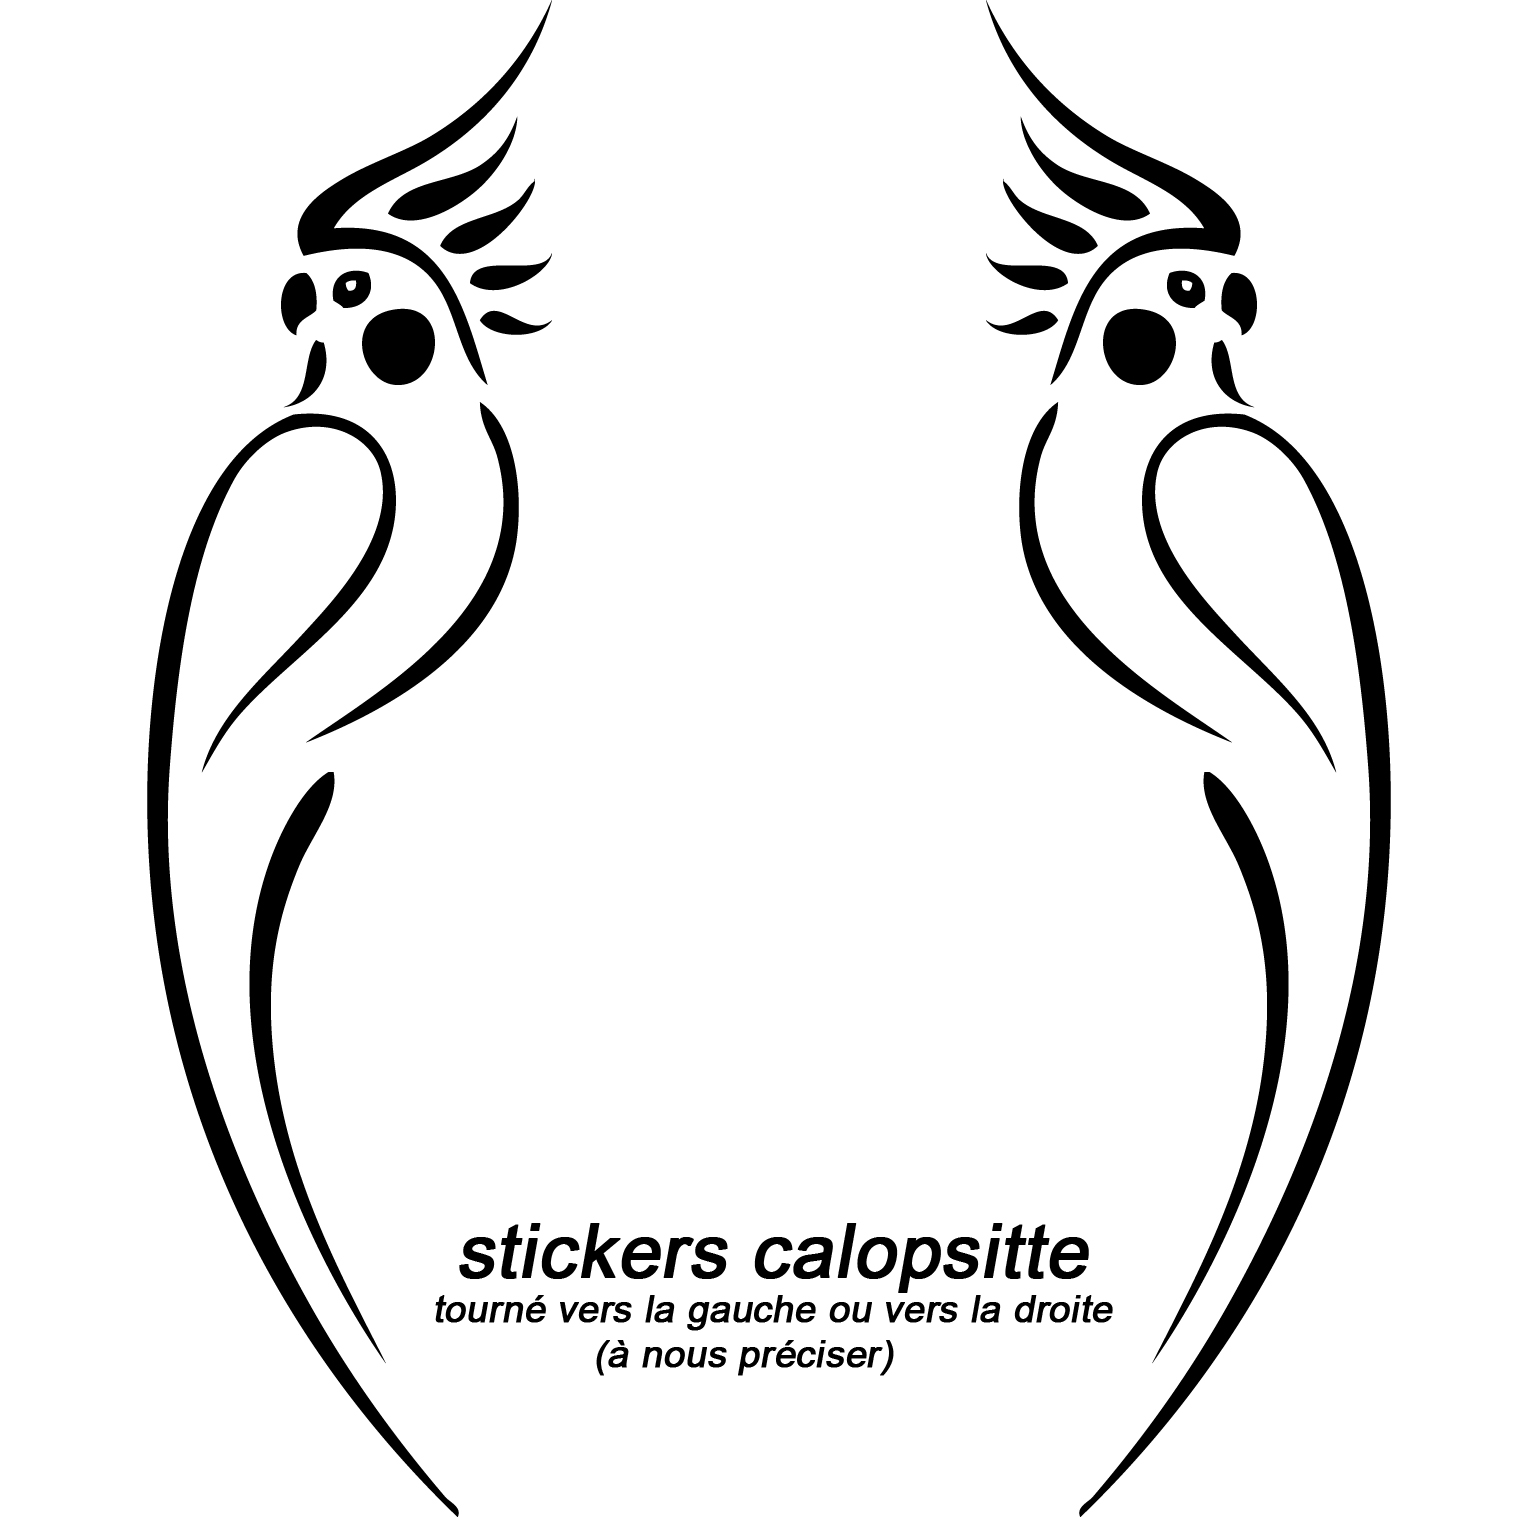 calopsittes